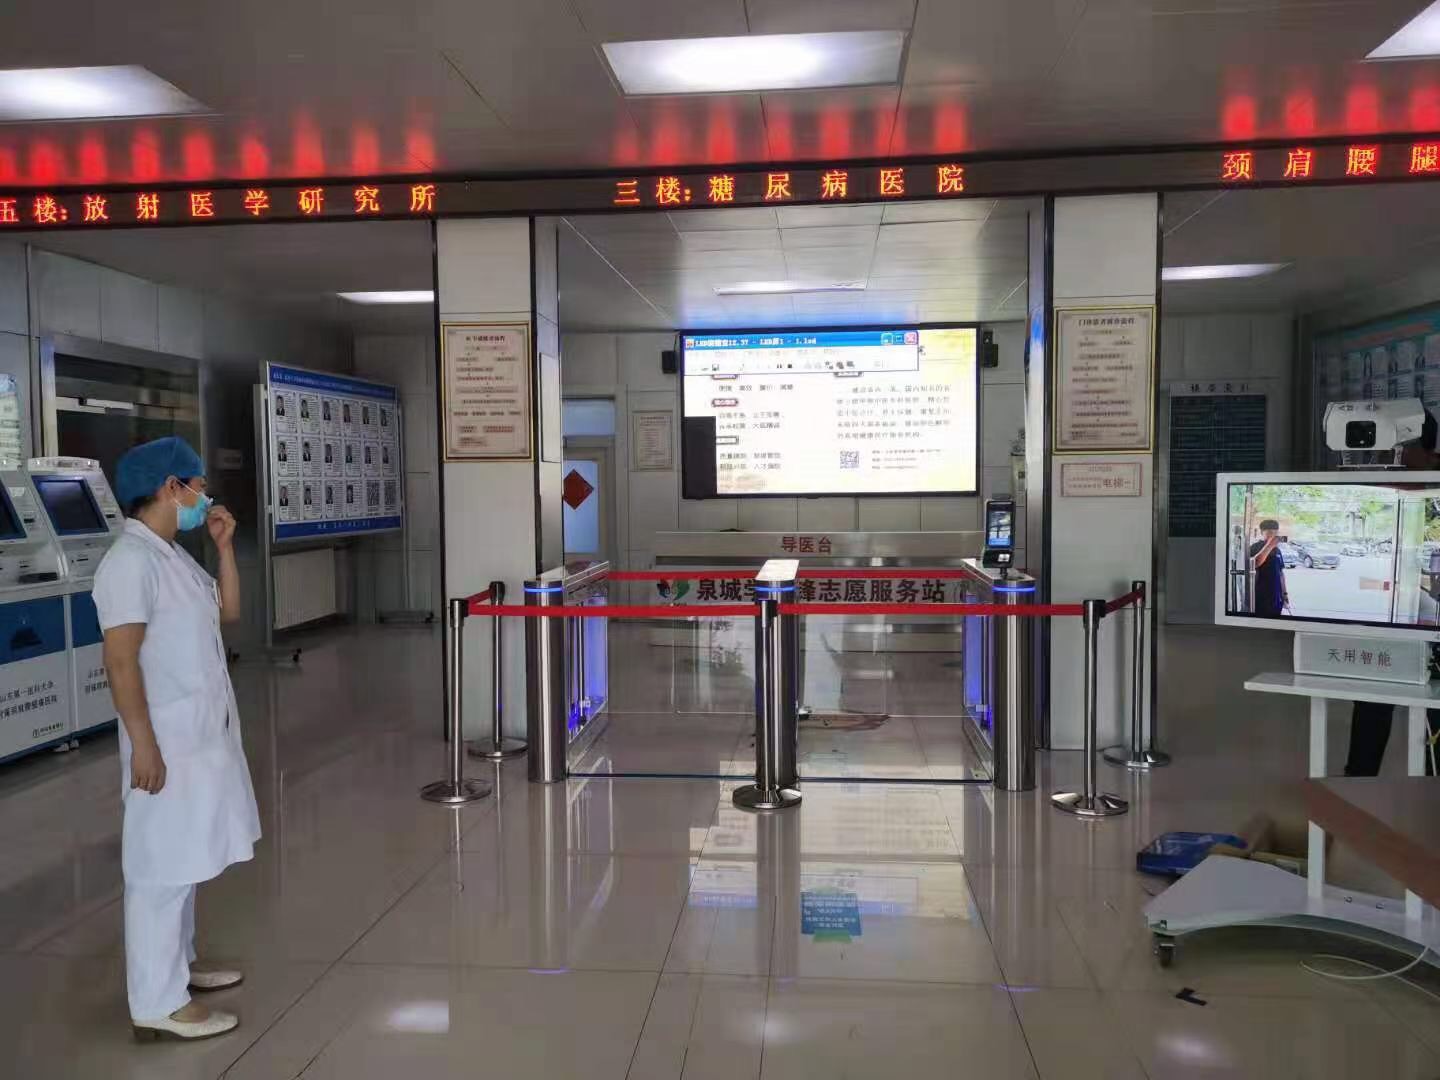  刷医保卡就能核验健康码,山东省人民医院上线自助健康码核验测温设备 